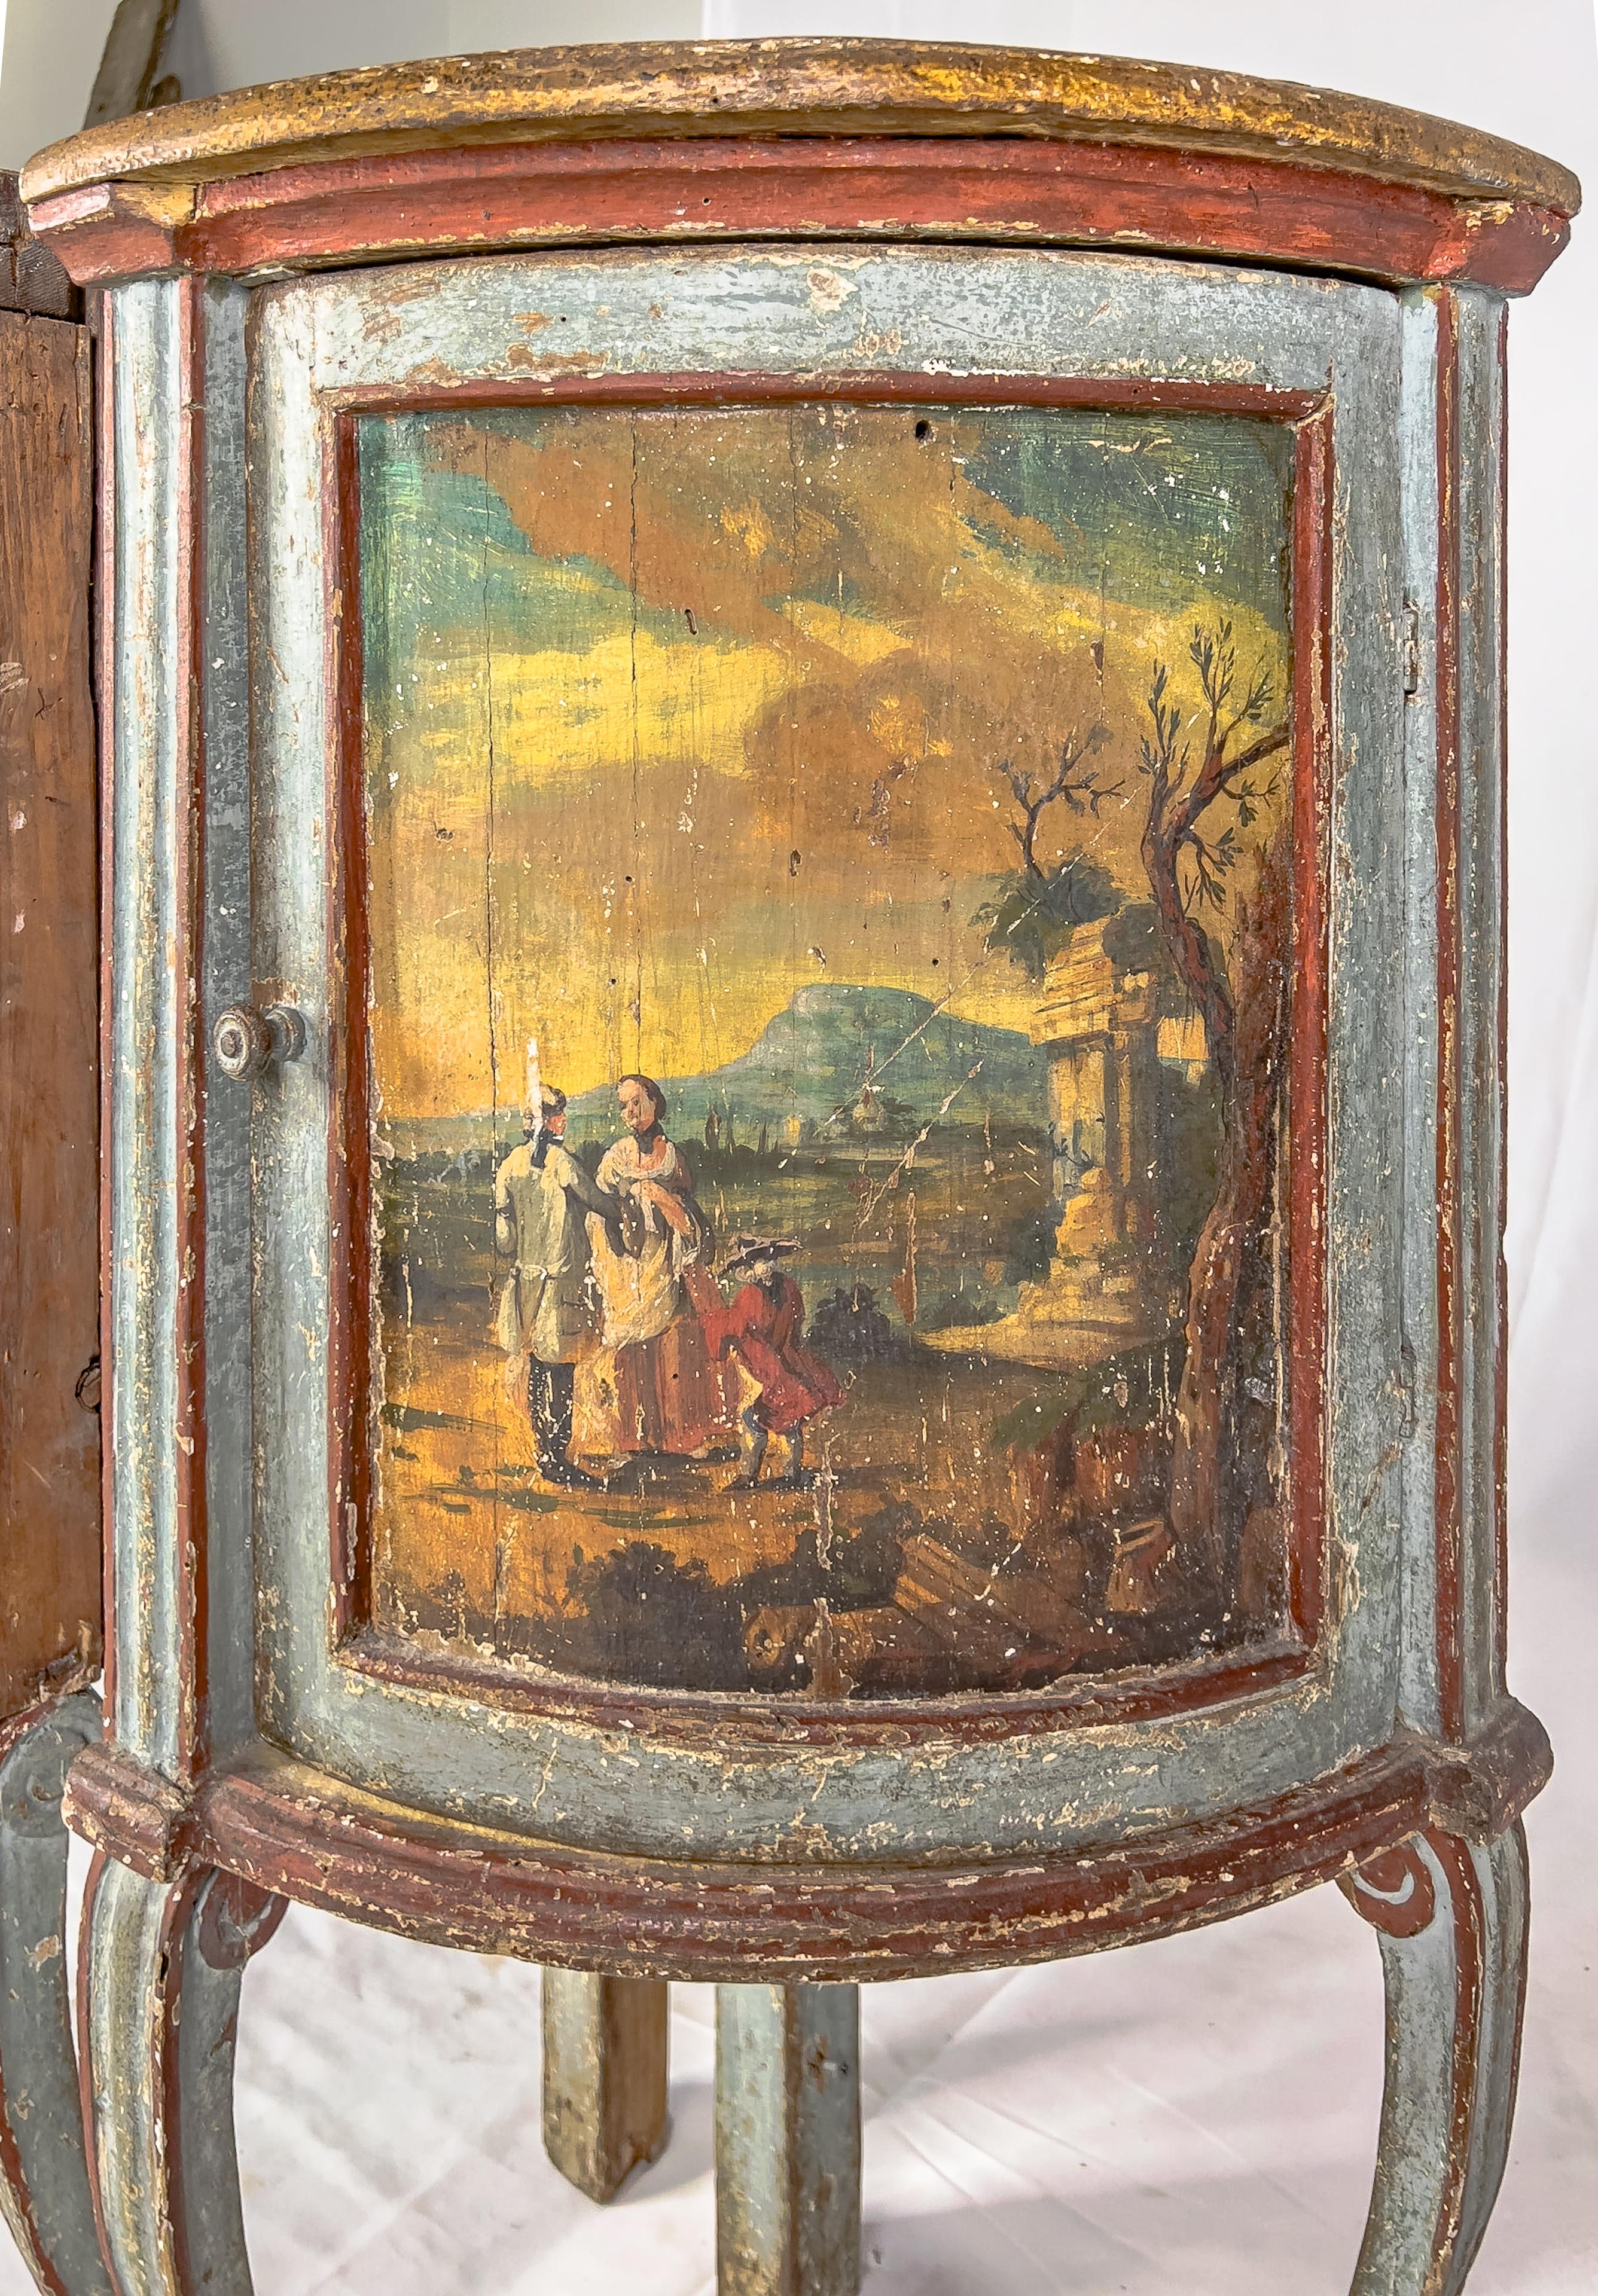 Meuble d'angle de style Louis XV peint à la main au 19ème siècle avec pieds cabriole. Chaque façade de meuble est ornée d'une peinture représentant des scènes pastorales avec des personnages et des ruines architecturales.